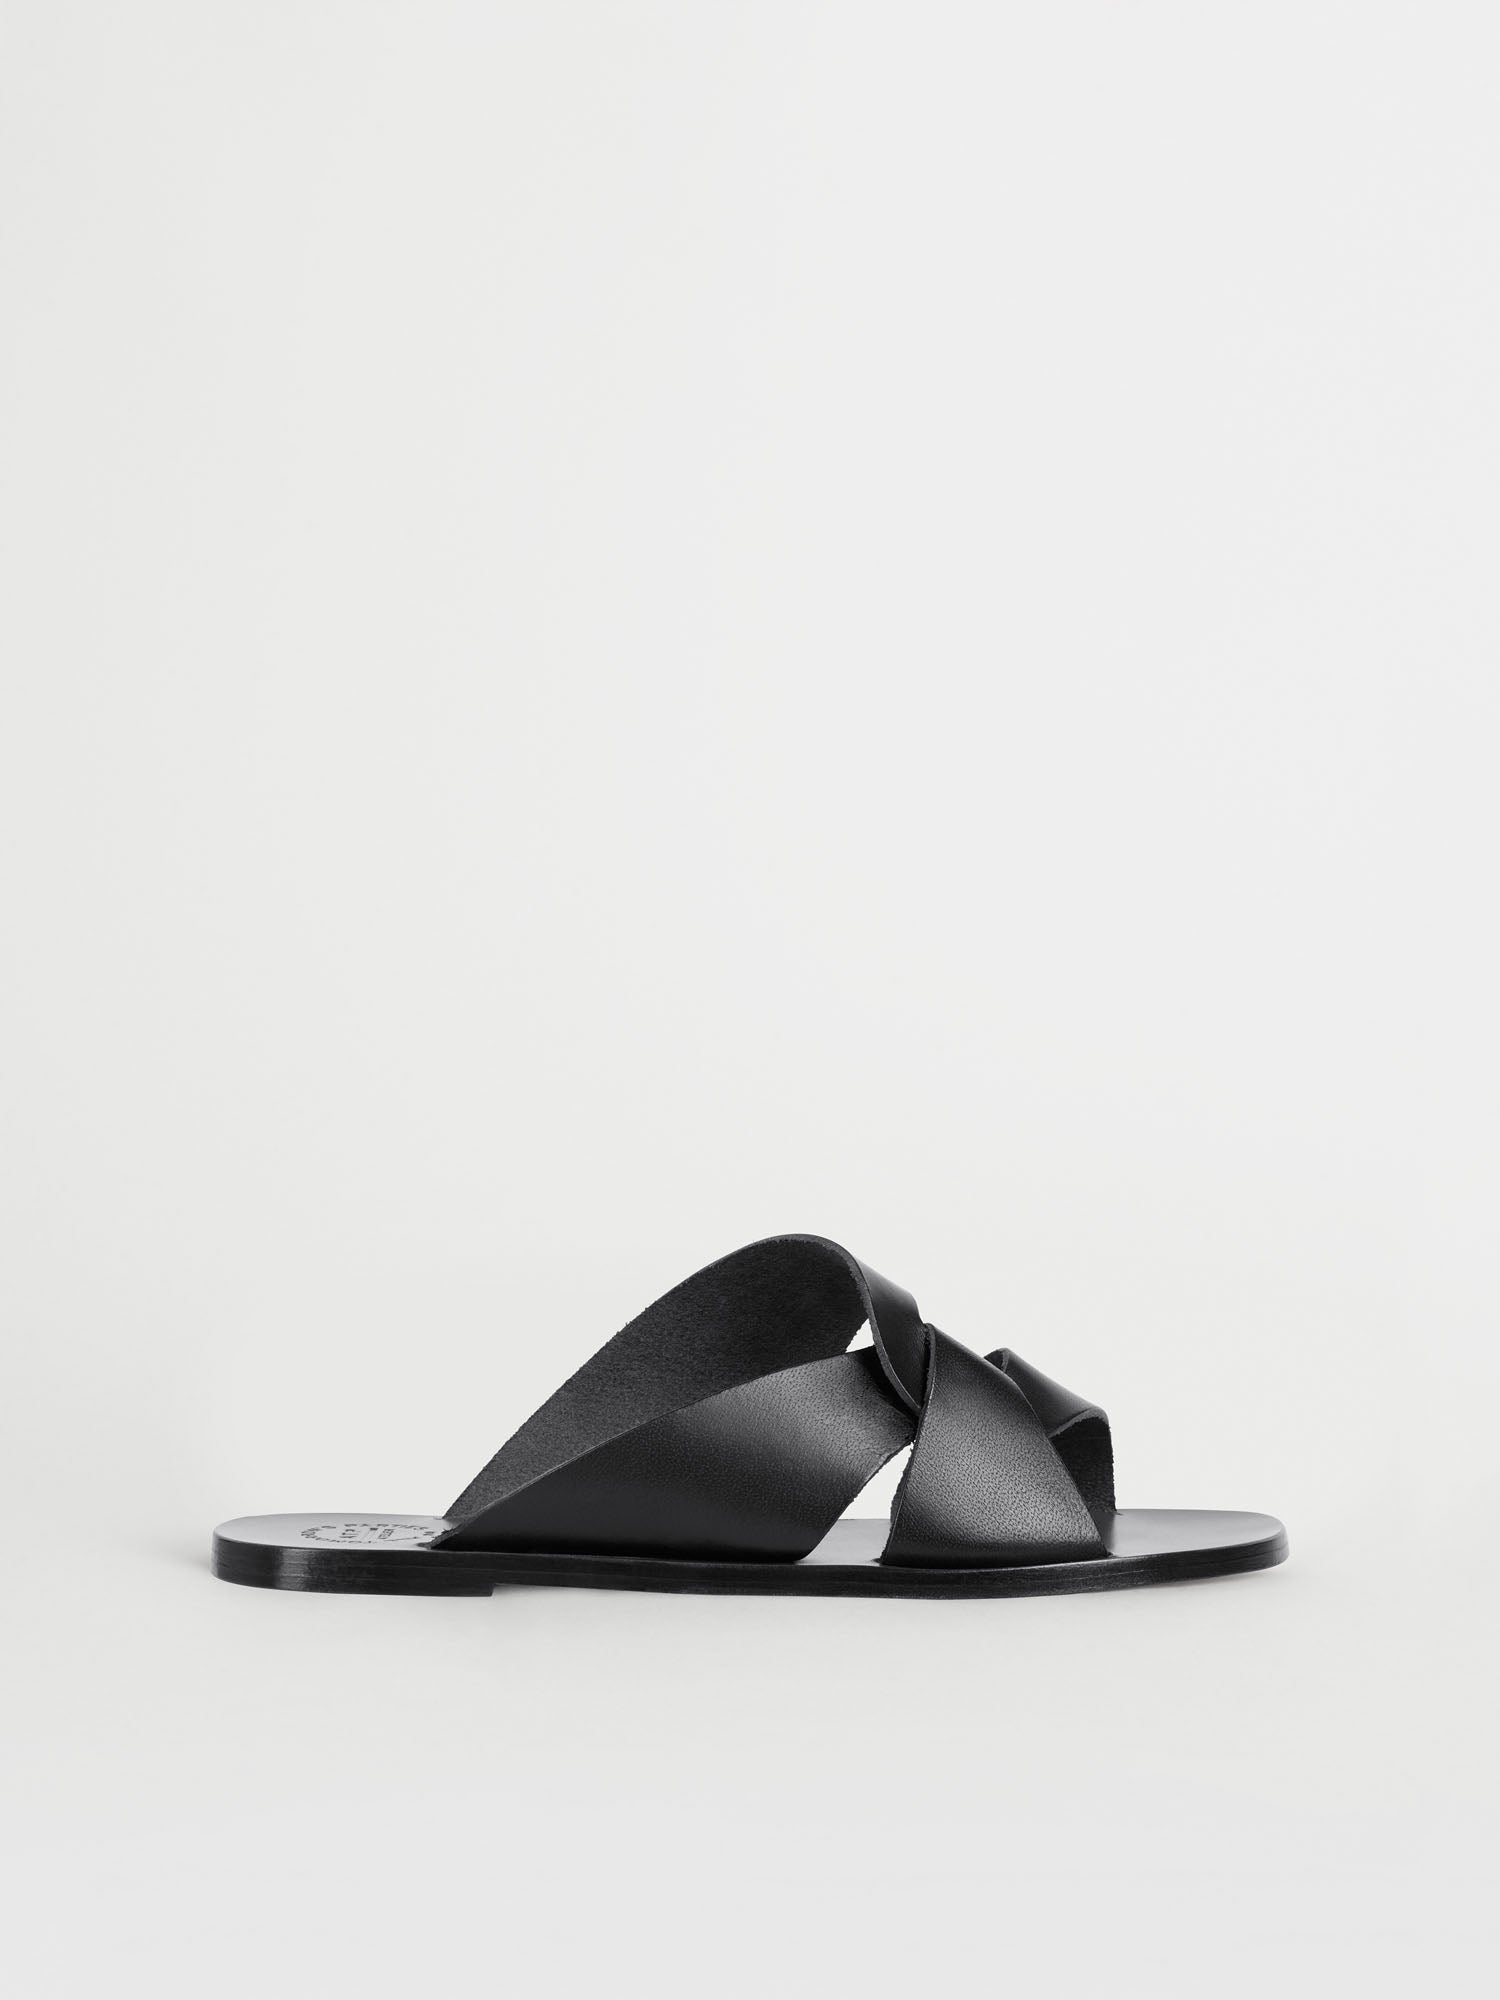 Aquara Black Vacchetta Sandals